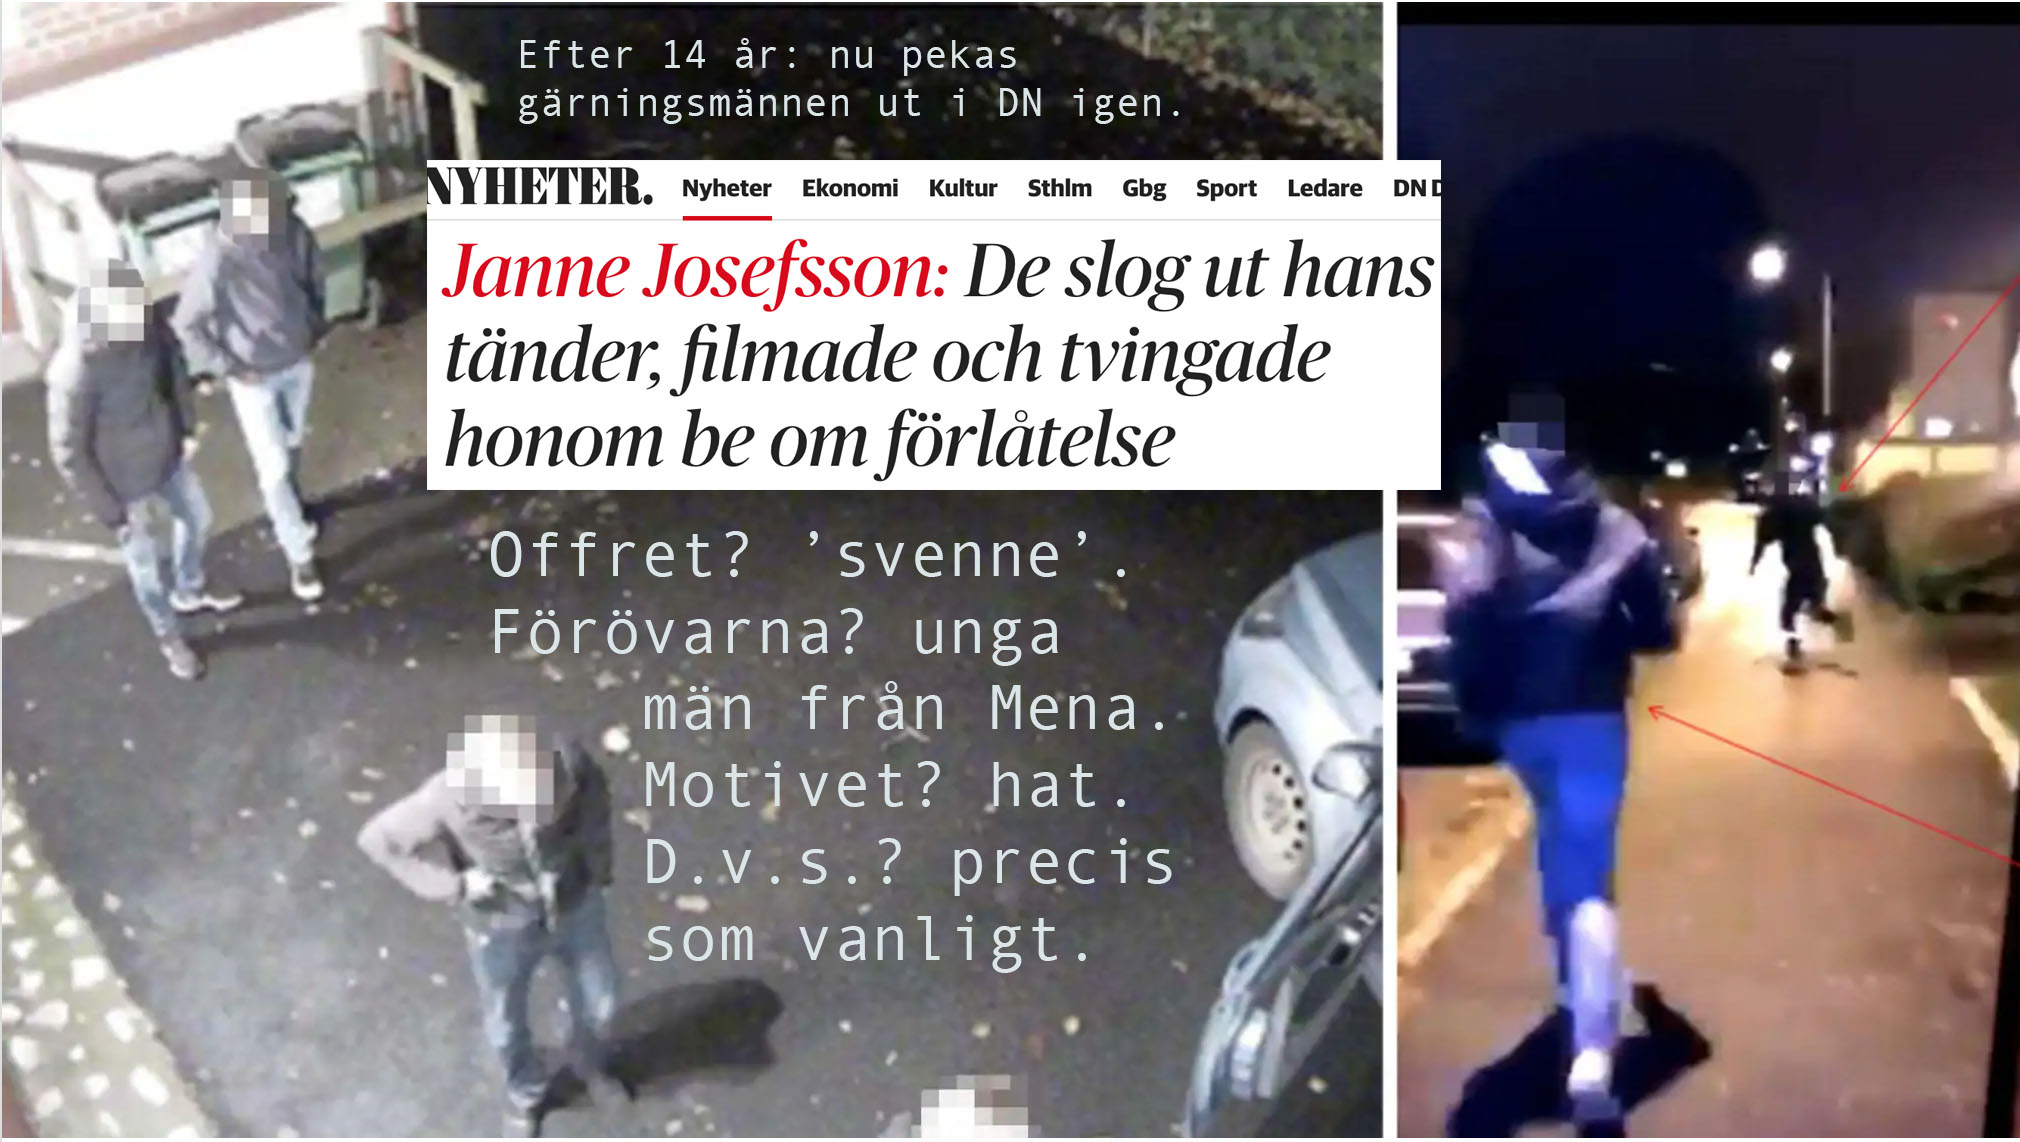 Josefsson skriver i DN vad som censurerats sedan 2006: dominansvåldets offer är svenskar. Dess förövare är muslimer. Och motivet är hat.